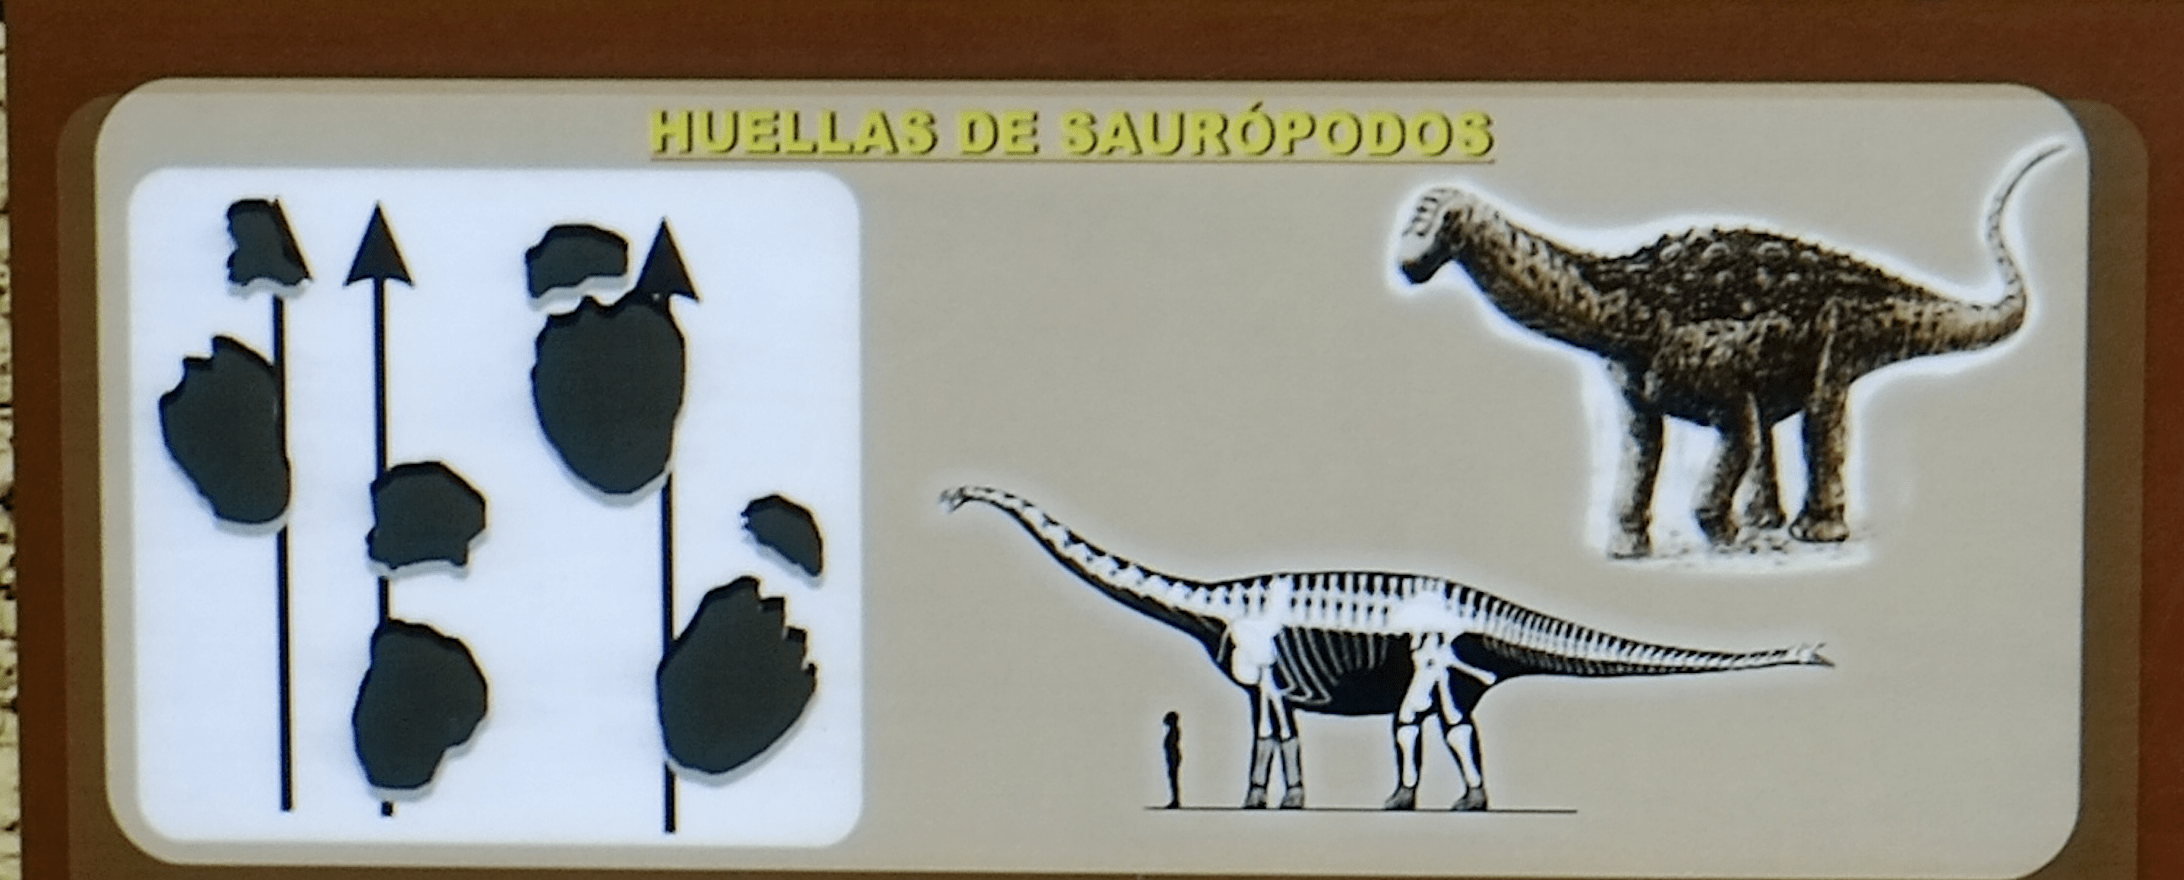 南米ボリビアのトロトロ国立公園へ。恐竜の足跡を見て妄想にふける。足跡は獣脚類、鳥脚類、竜脚類、曲竜類。
ボリビアのグランドキャニオンと呼ばれる渓谷や、鍾乳洞を探検した。